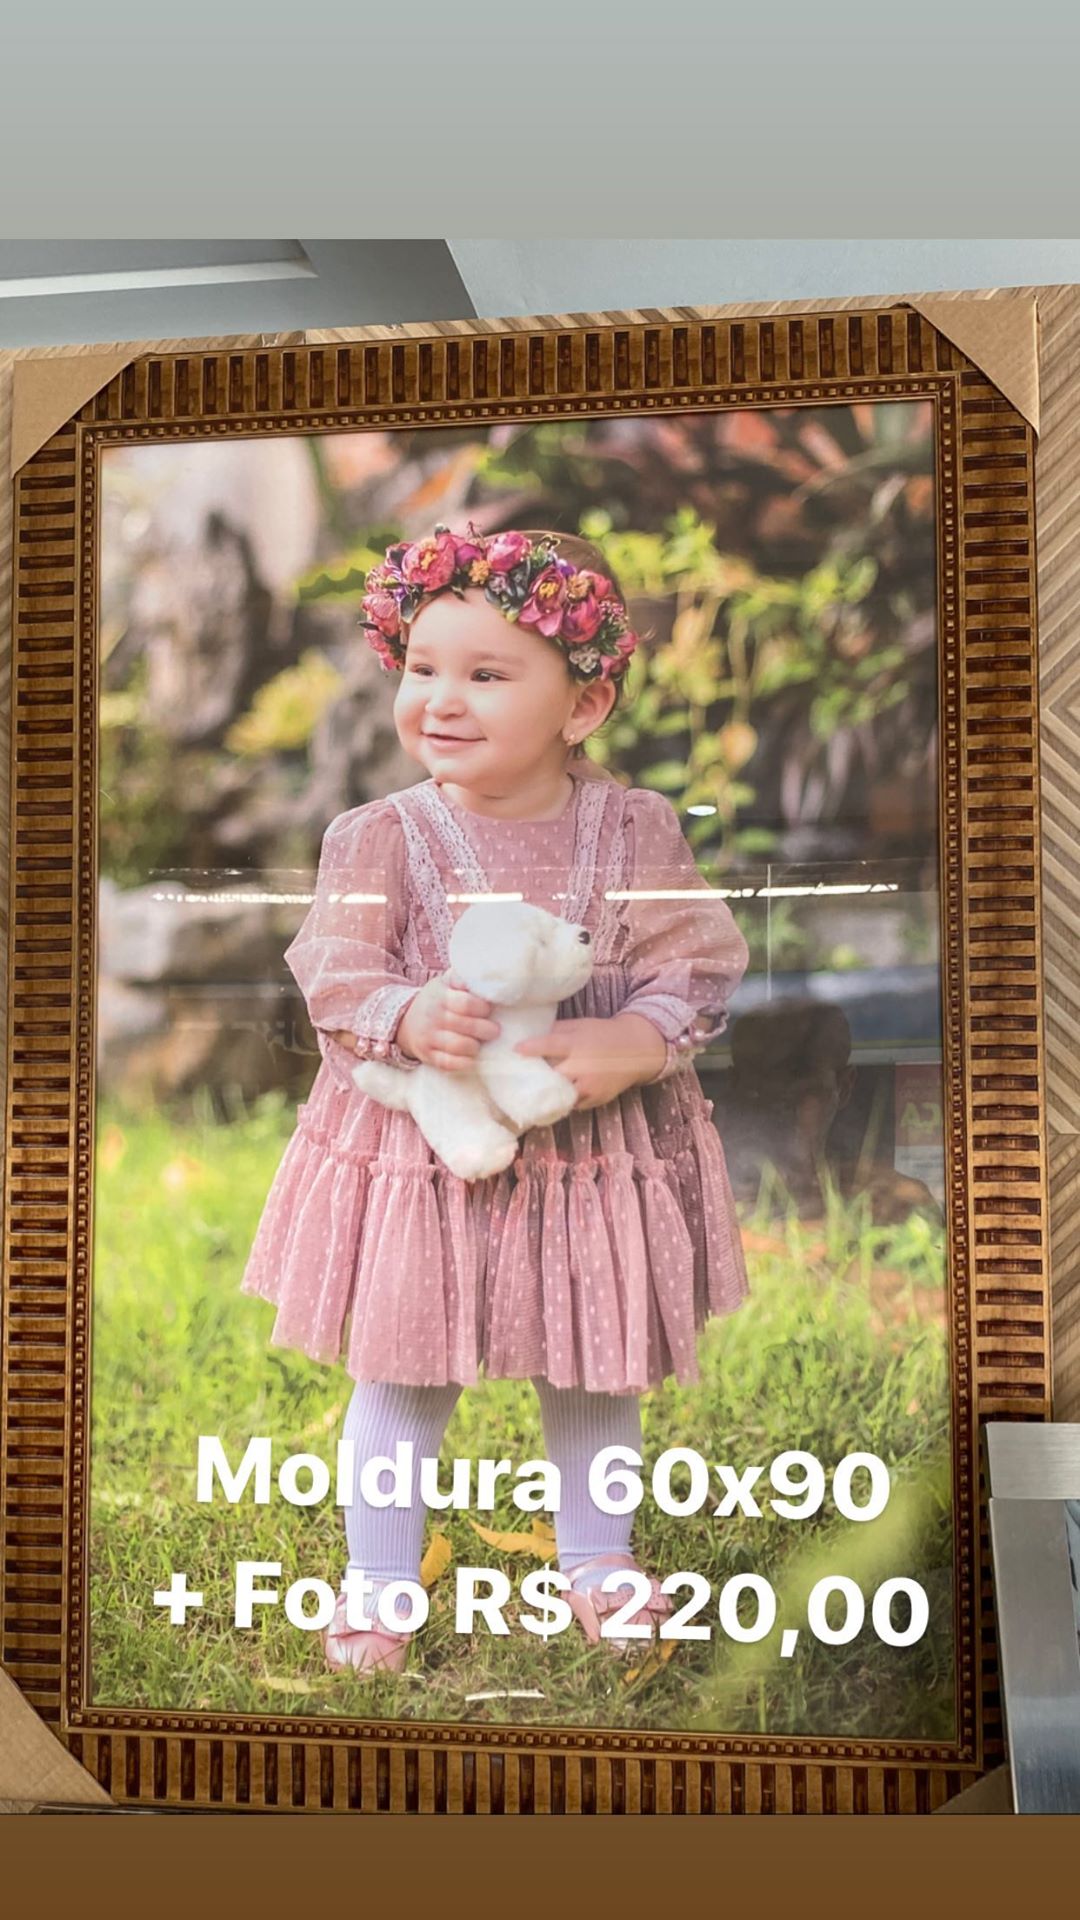 Promoção: Moldura 60x90 + Foto